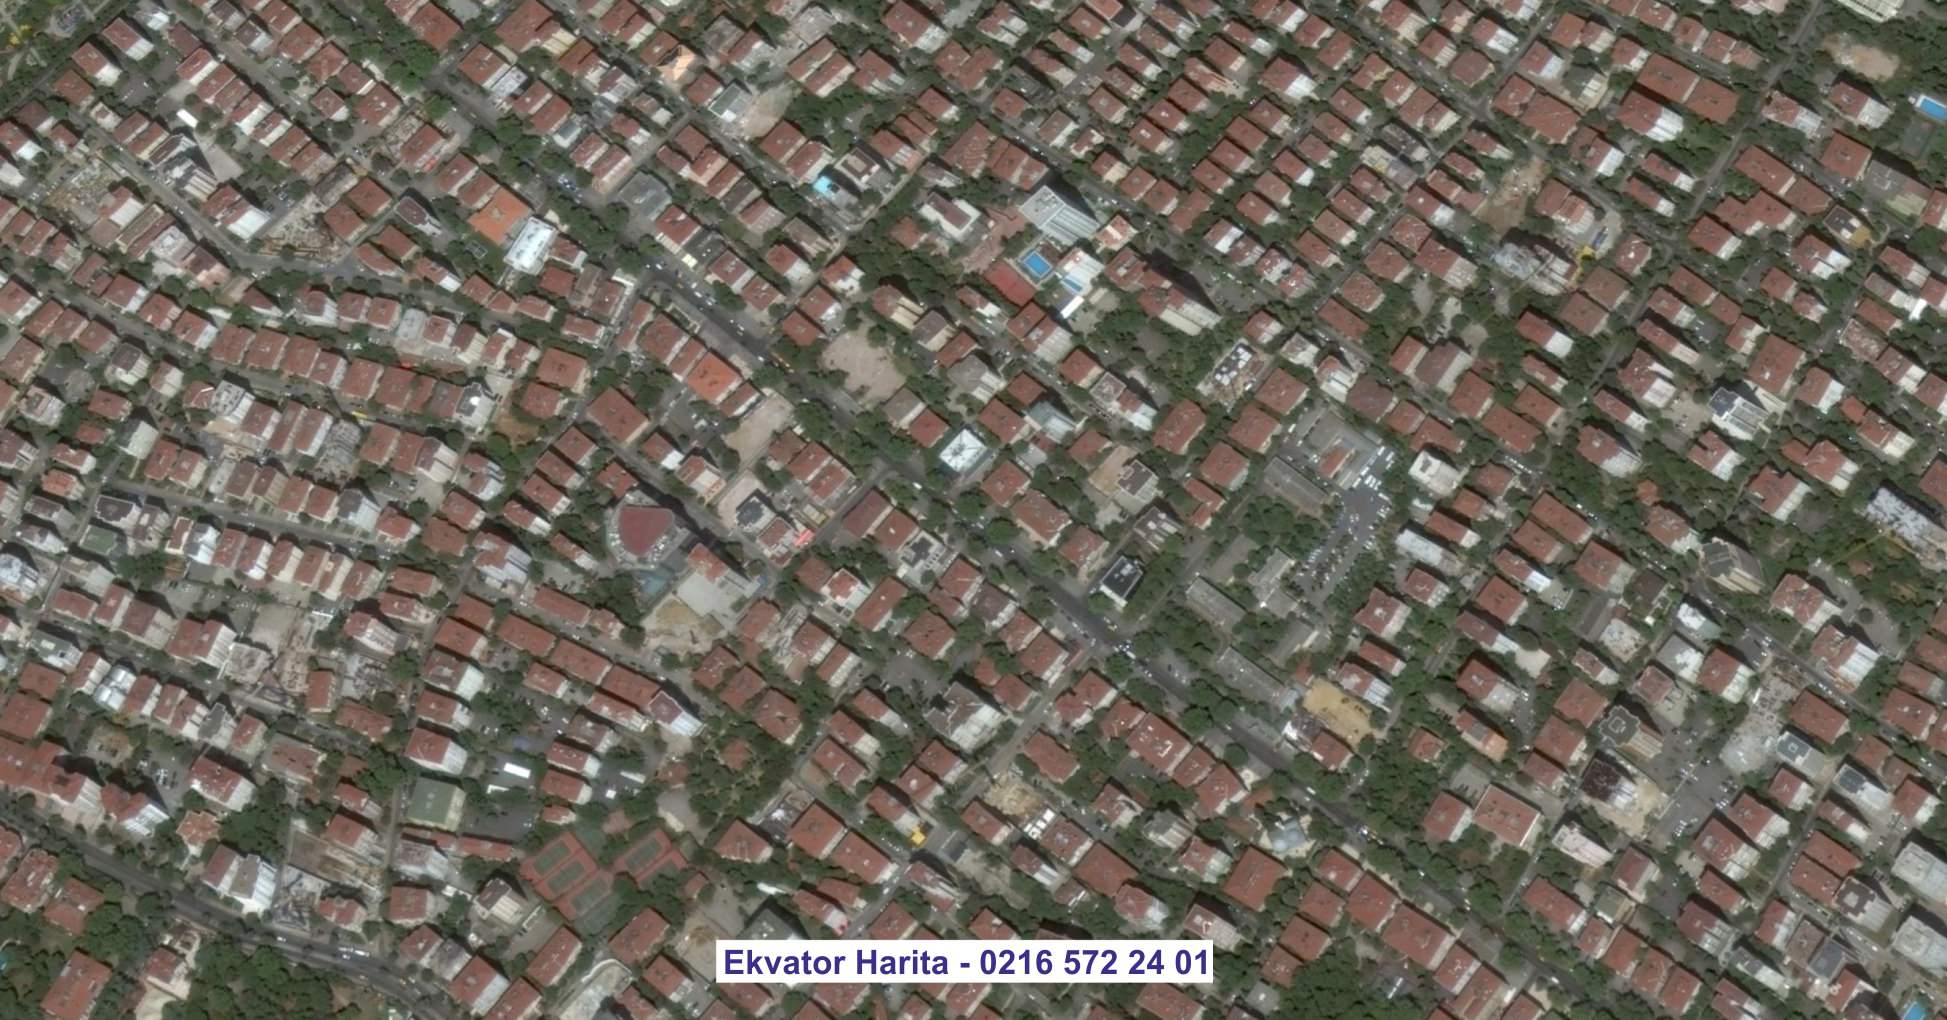 Zonguldak Uydu Görüntüsü Örnek Fotoğrafı